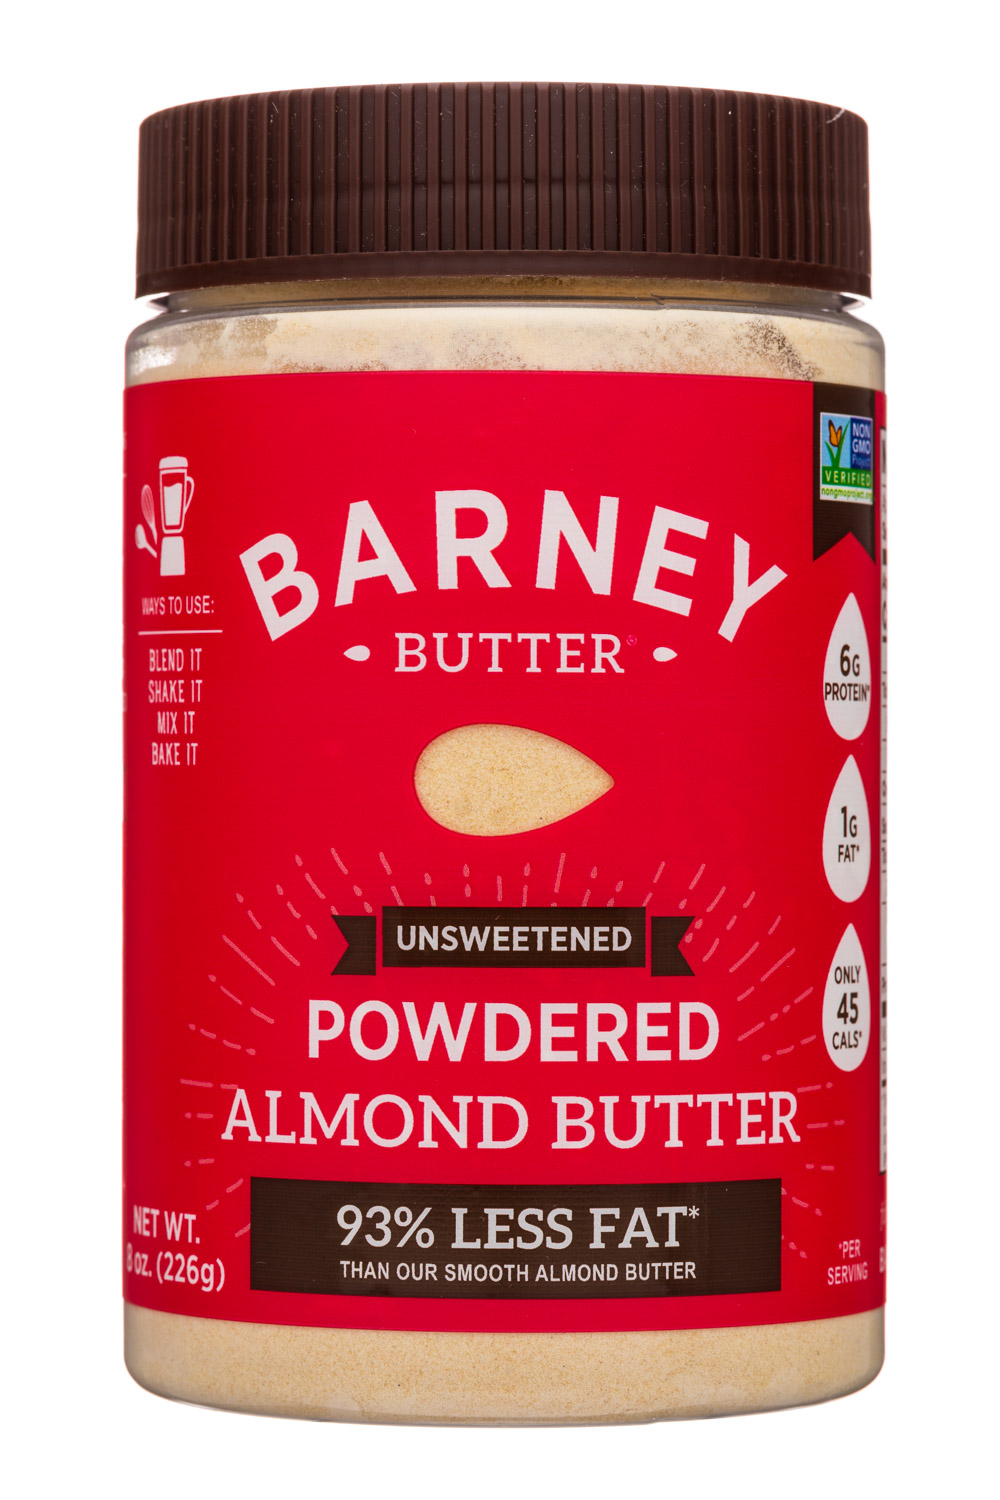 Powered Almond Butter